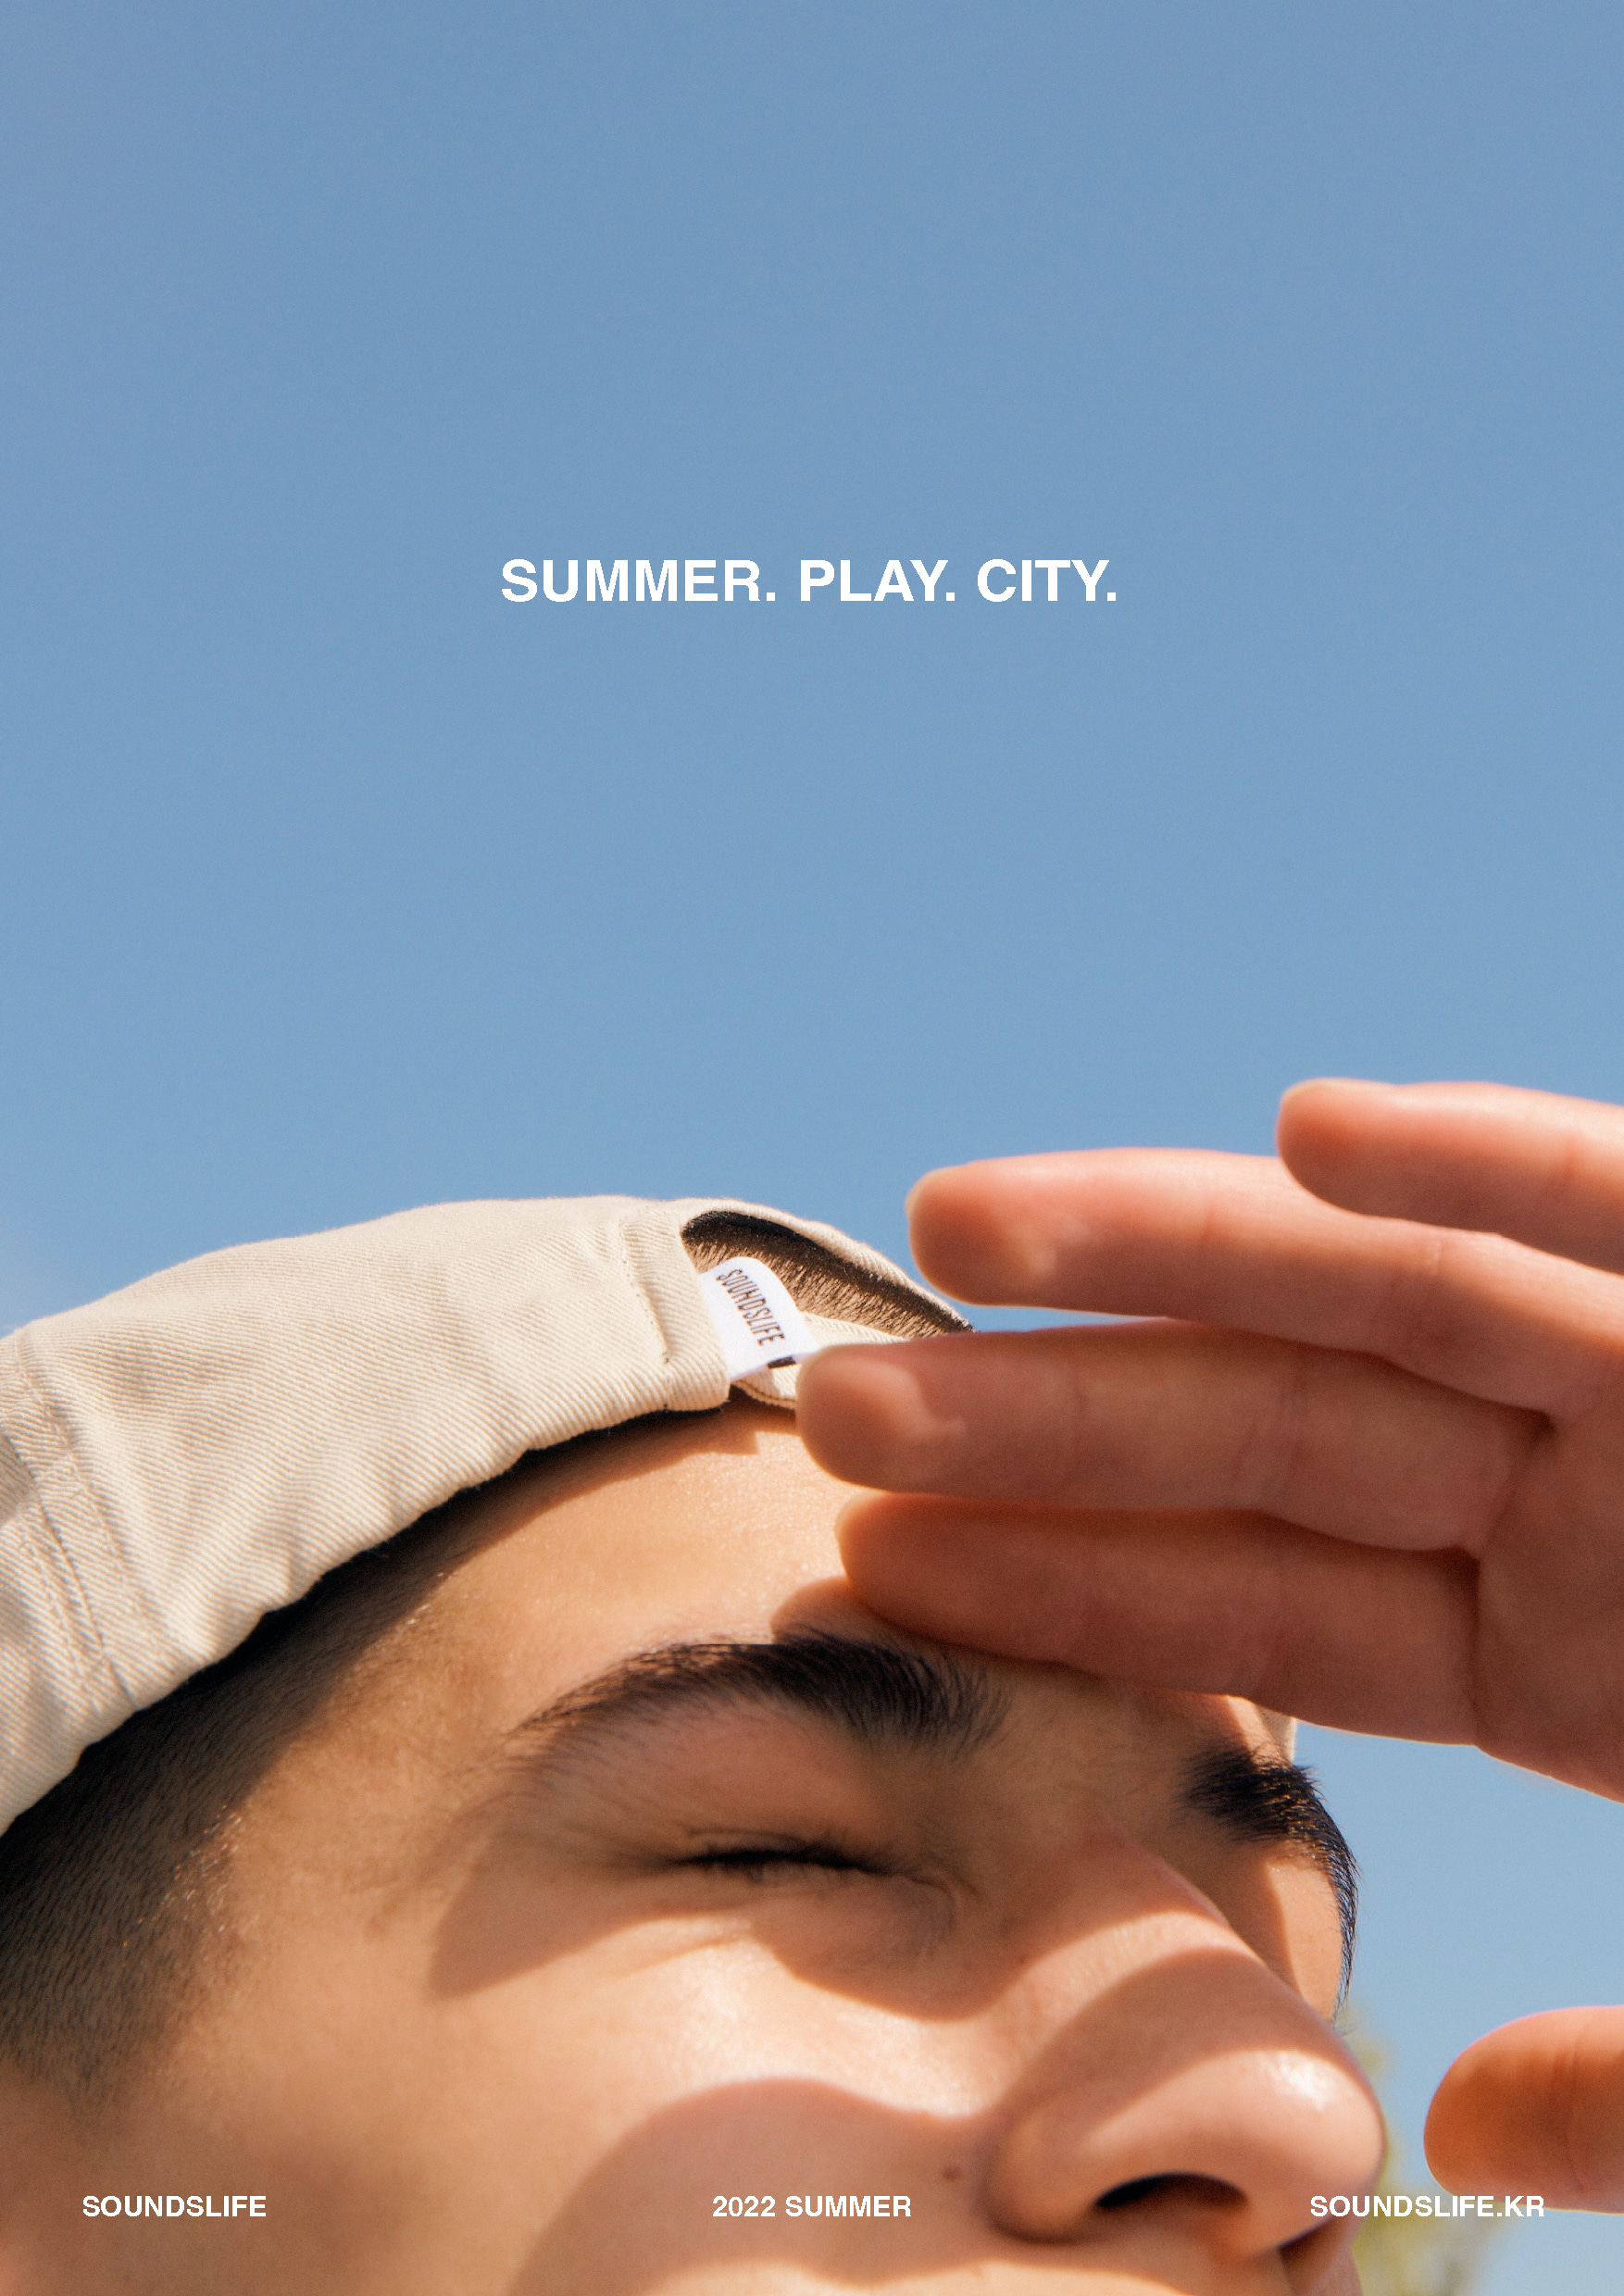 SOUNDSLIFE - SOUNDSLIFE 22SM SUMMER, PLAY, CITY